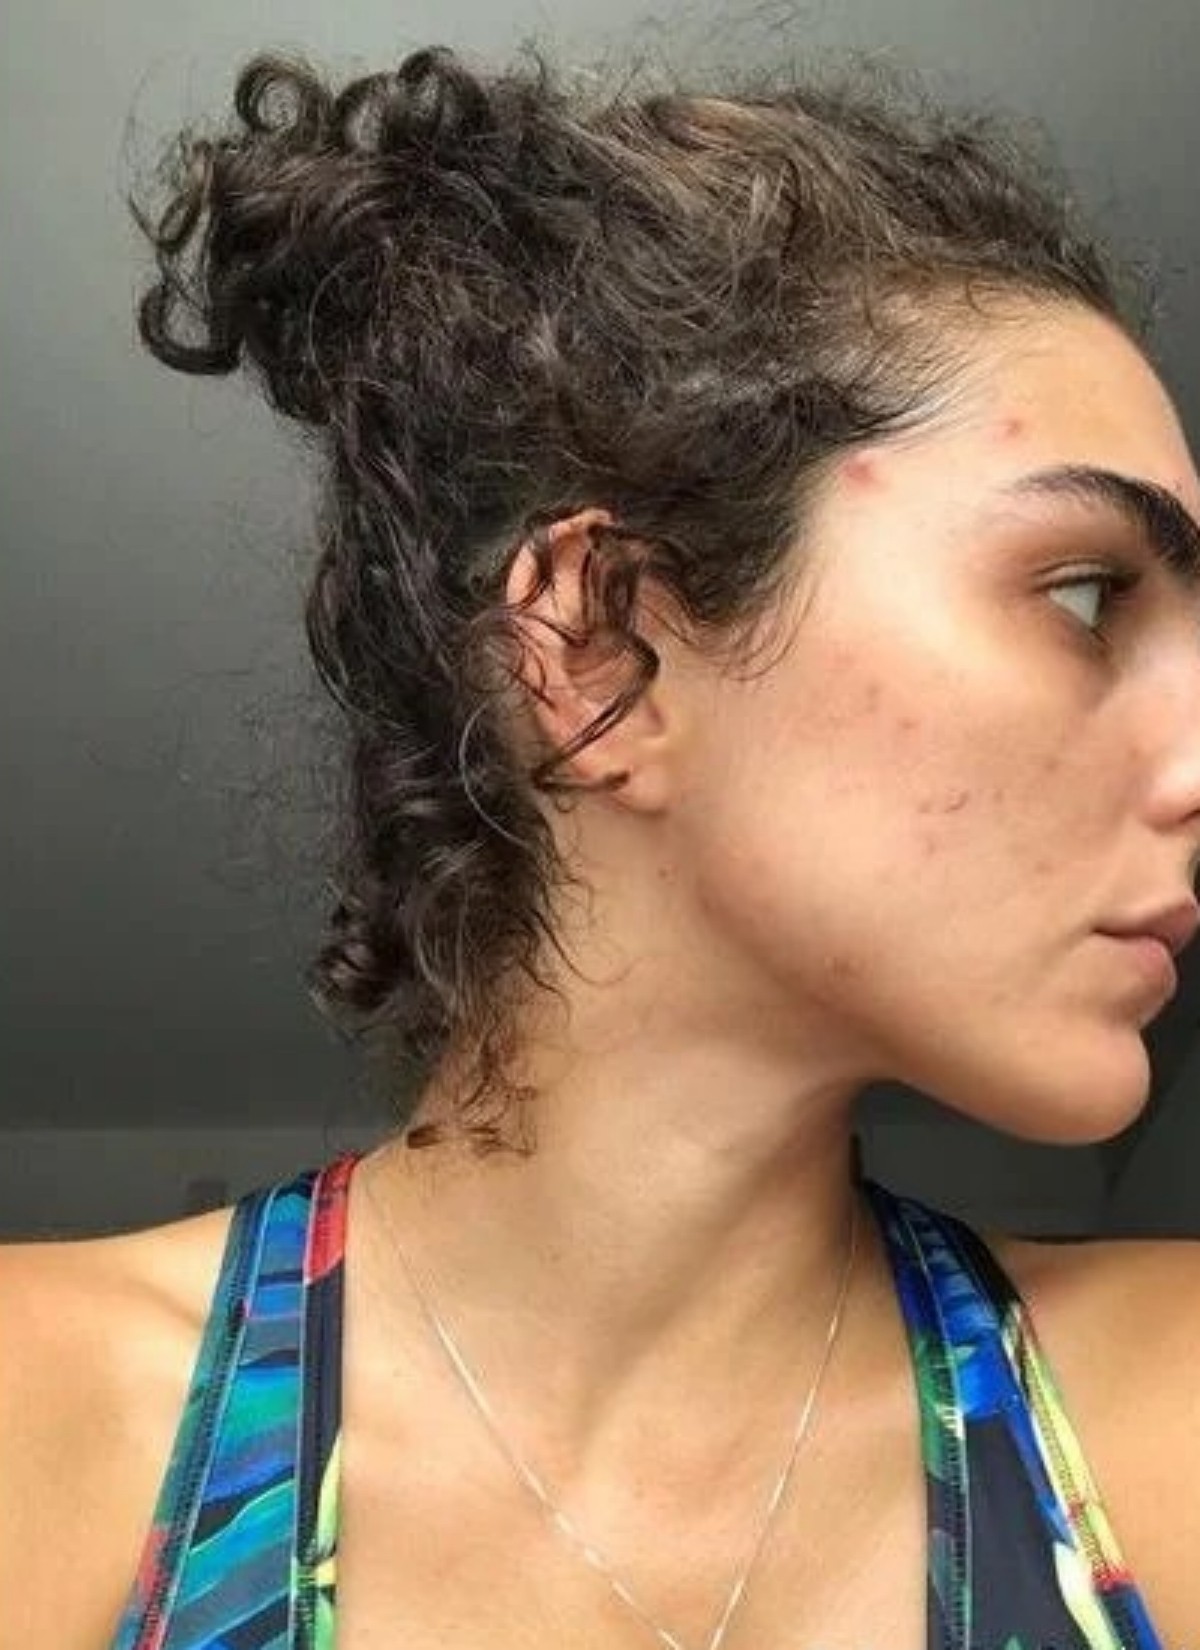 Julia Konrad já enfrentou problema com acne — Foto: Reprodução Instagram